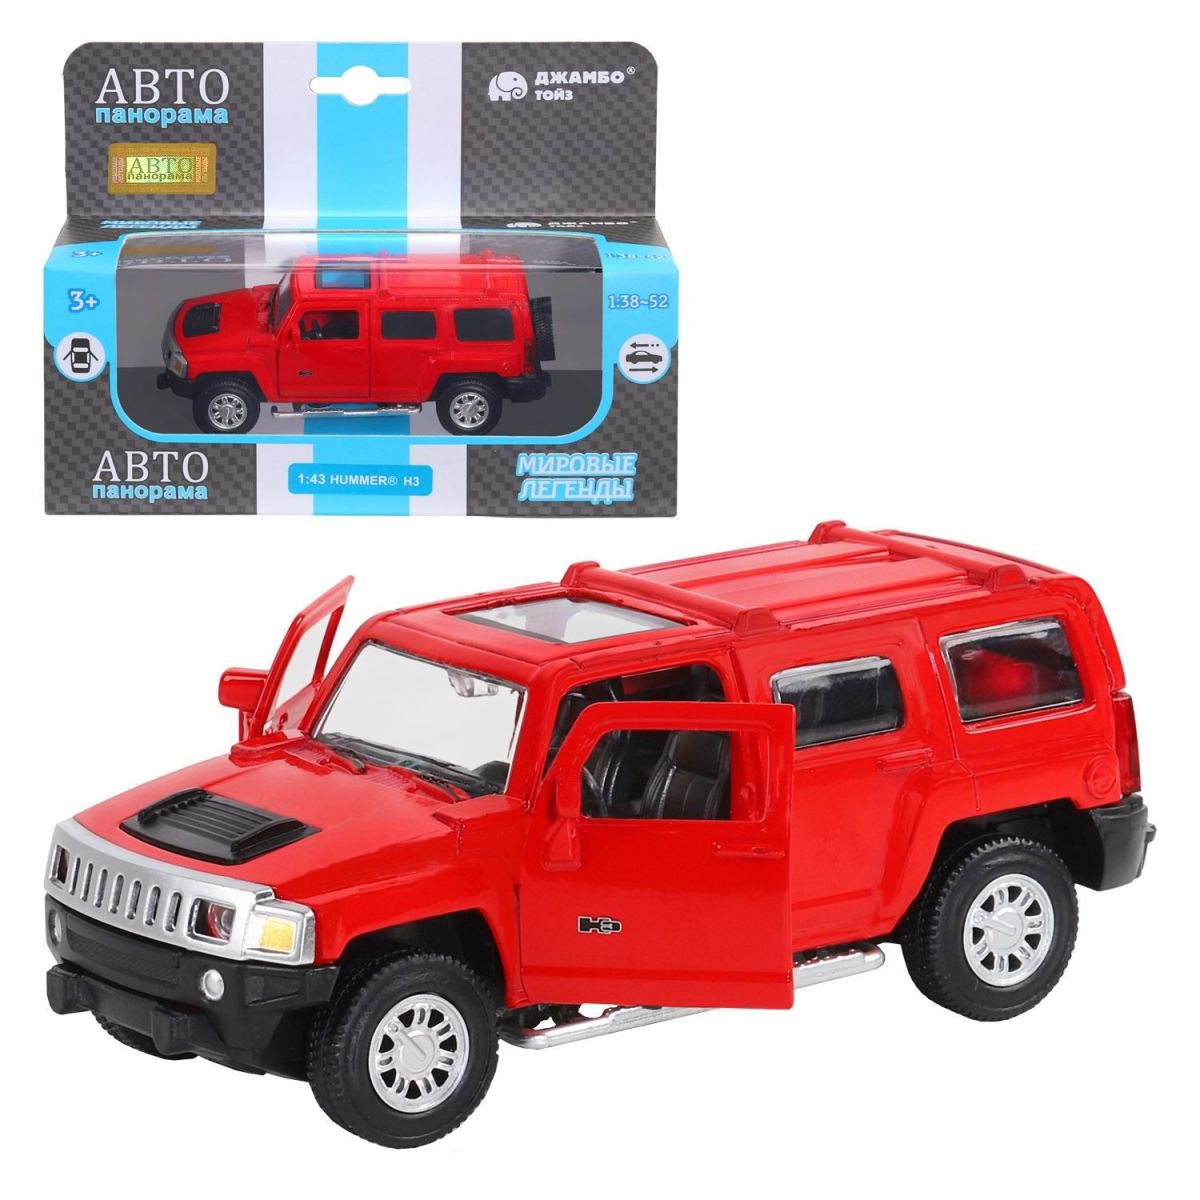 Машинка металлическая Автопанорама 1:43 Hummer H3, красный, инерция